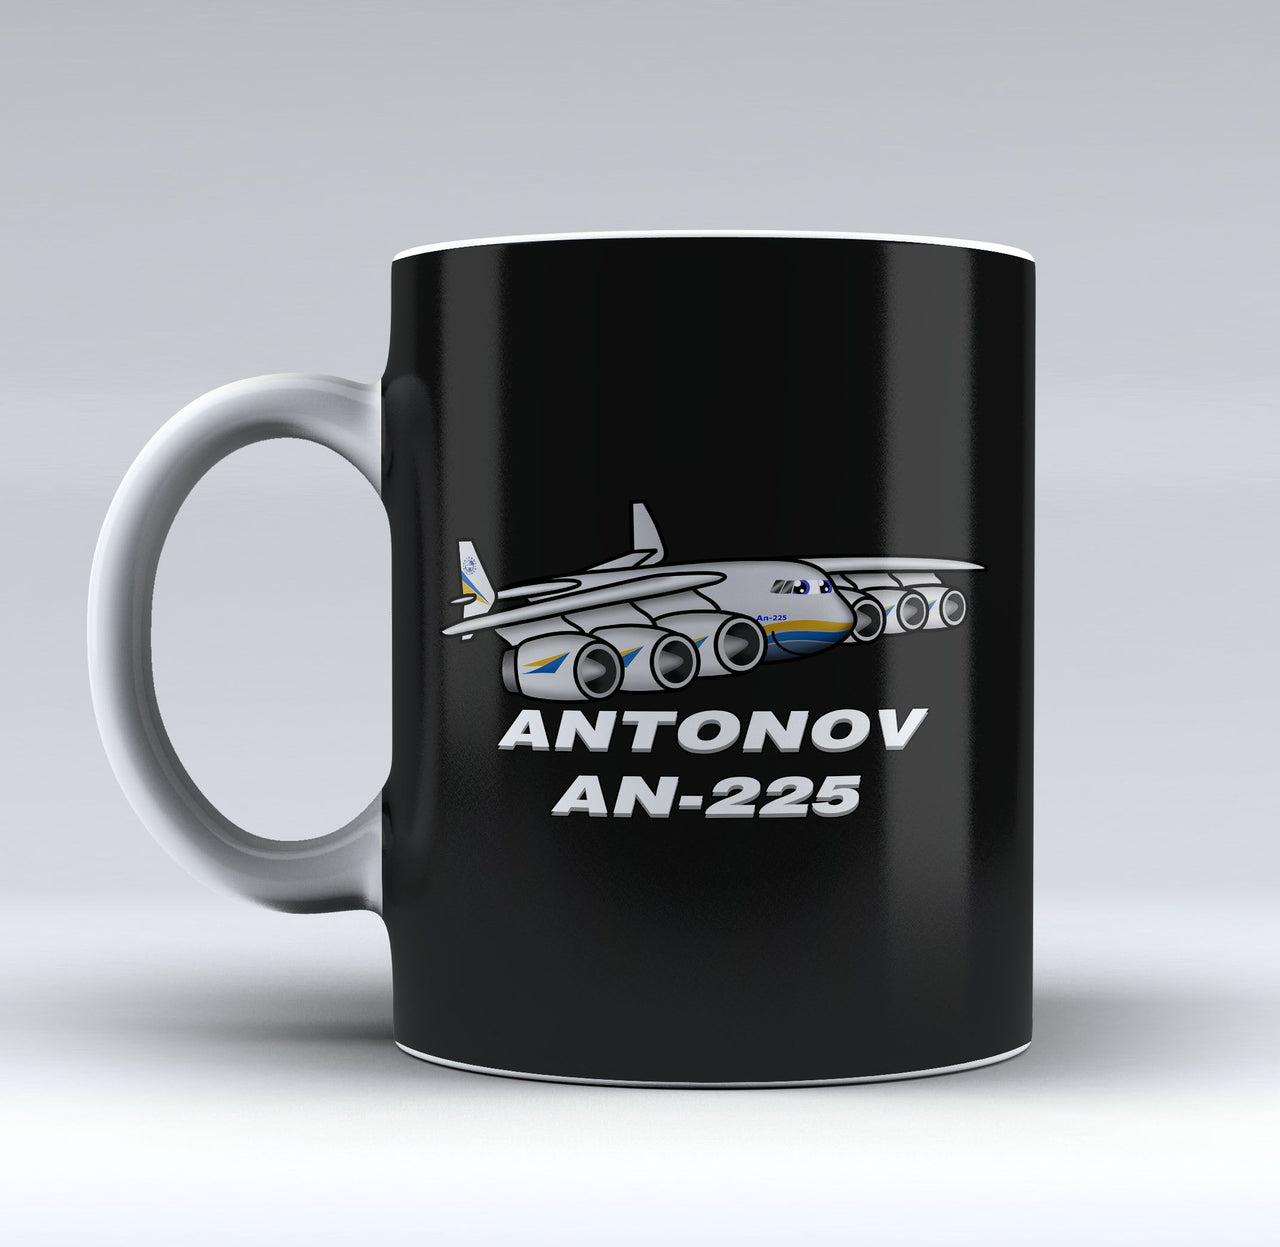 Antonov AN-225 (25) Designed Mugs